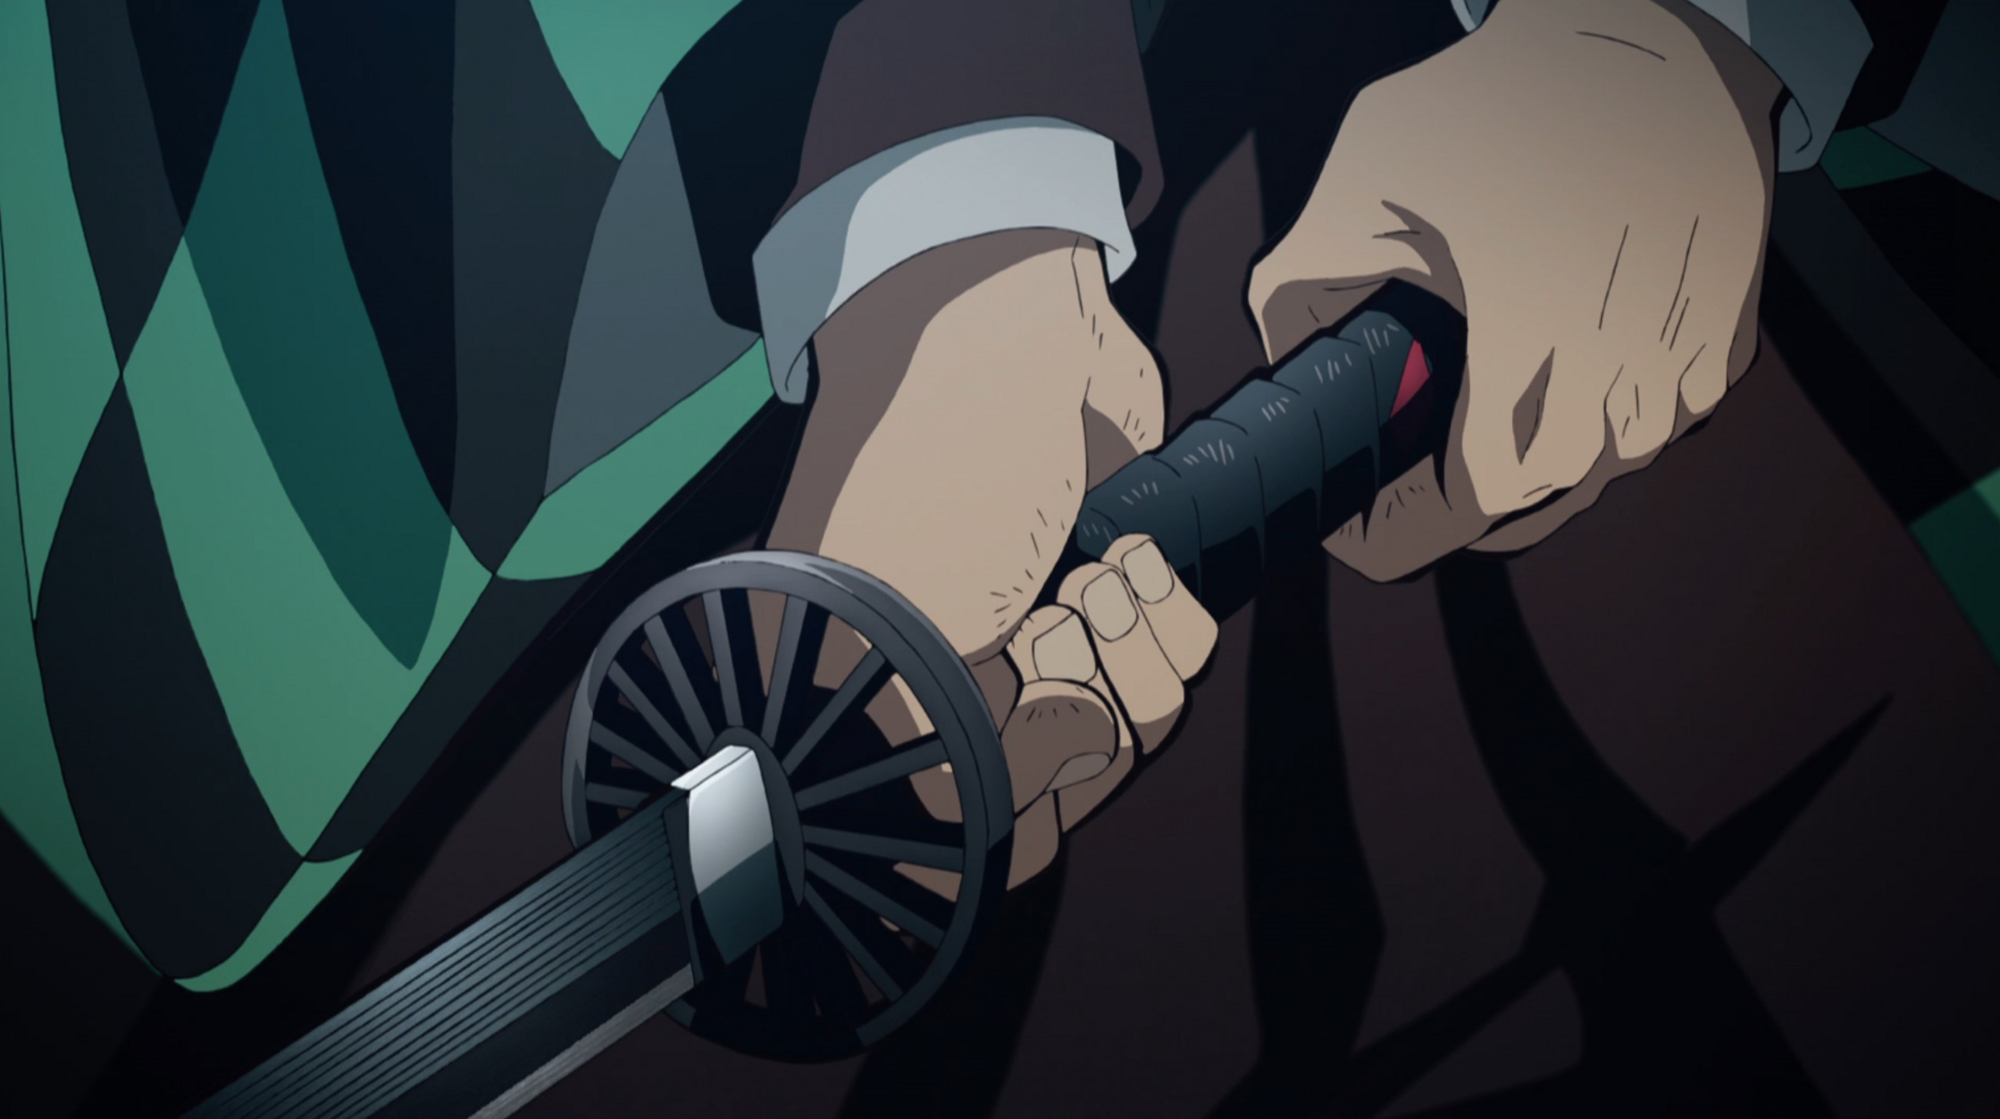 Demon Slayer - Eis que o tanjiro quebra sua espada nova #anime